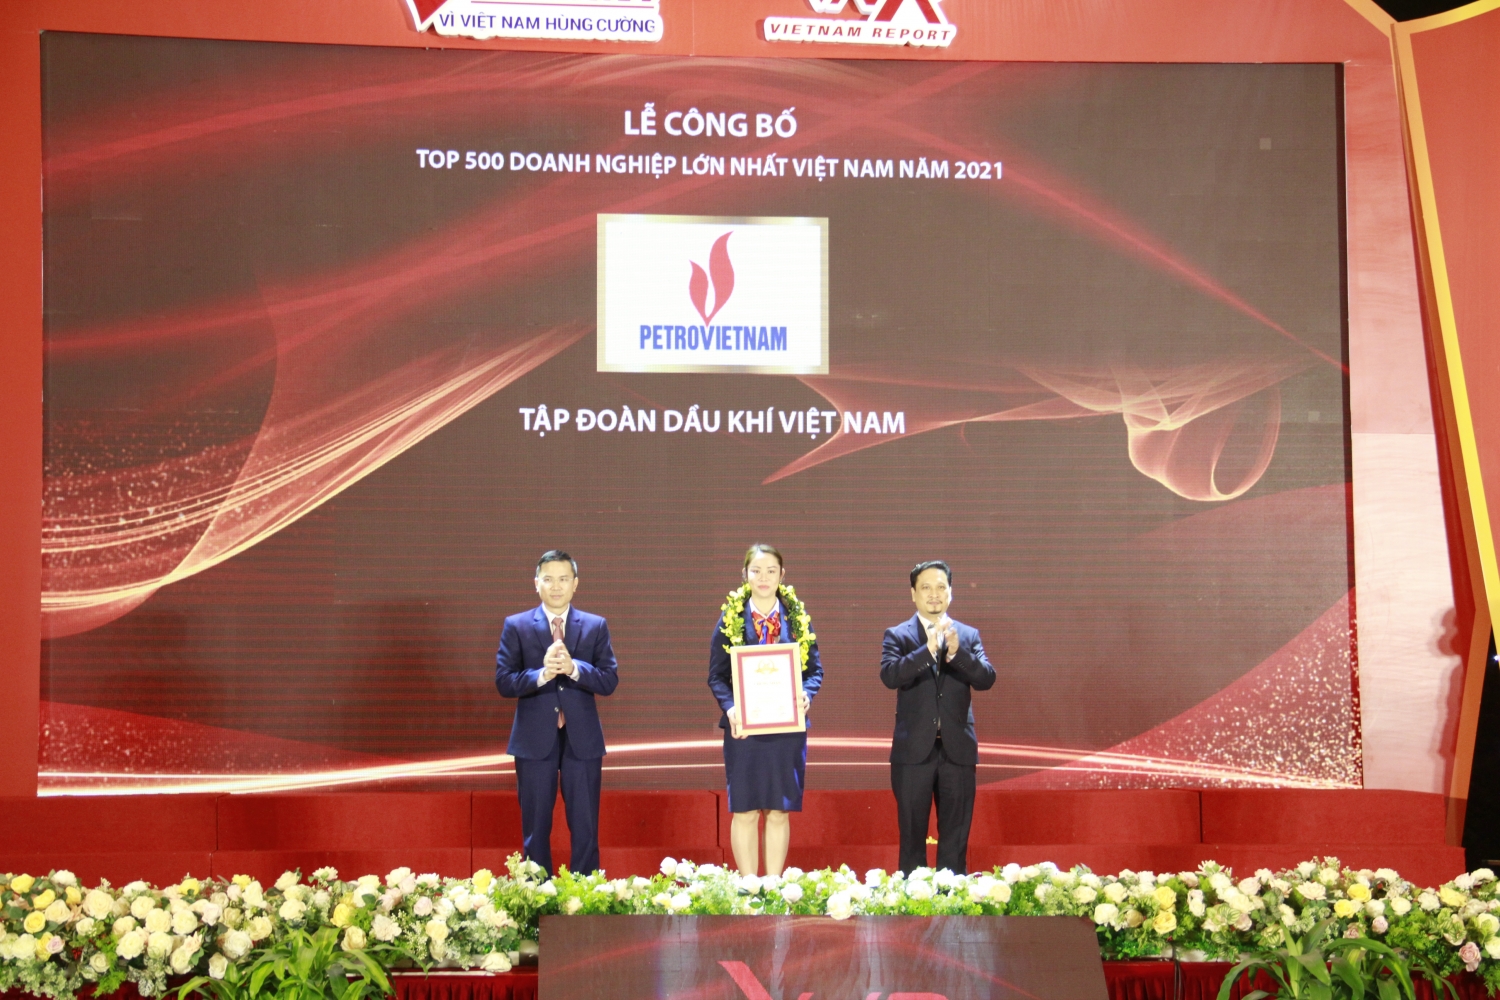 Petrovietnam và doanh nghiệp Dầu khí khác khẳng định vị thế trong Top 500 doanh nghiệp lớn nhất Việt Nam 